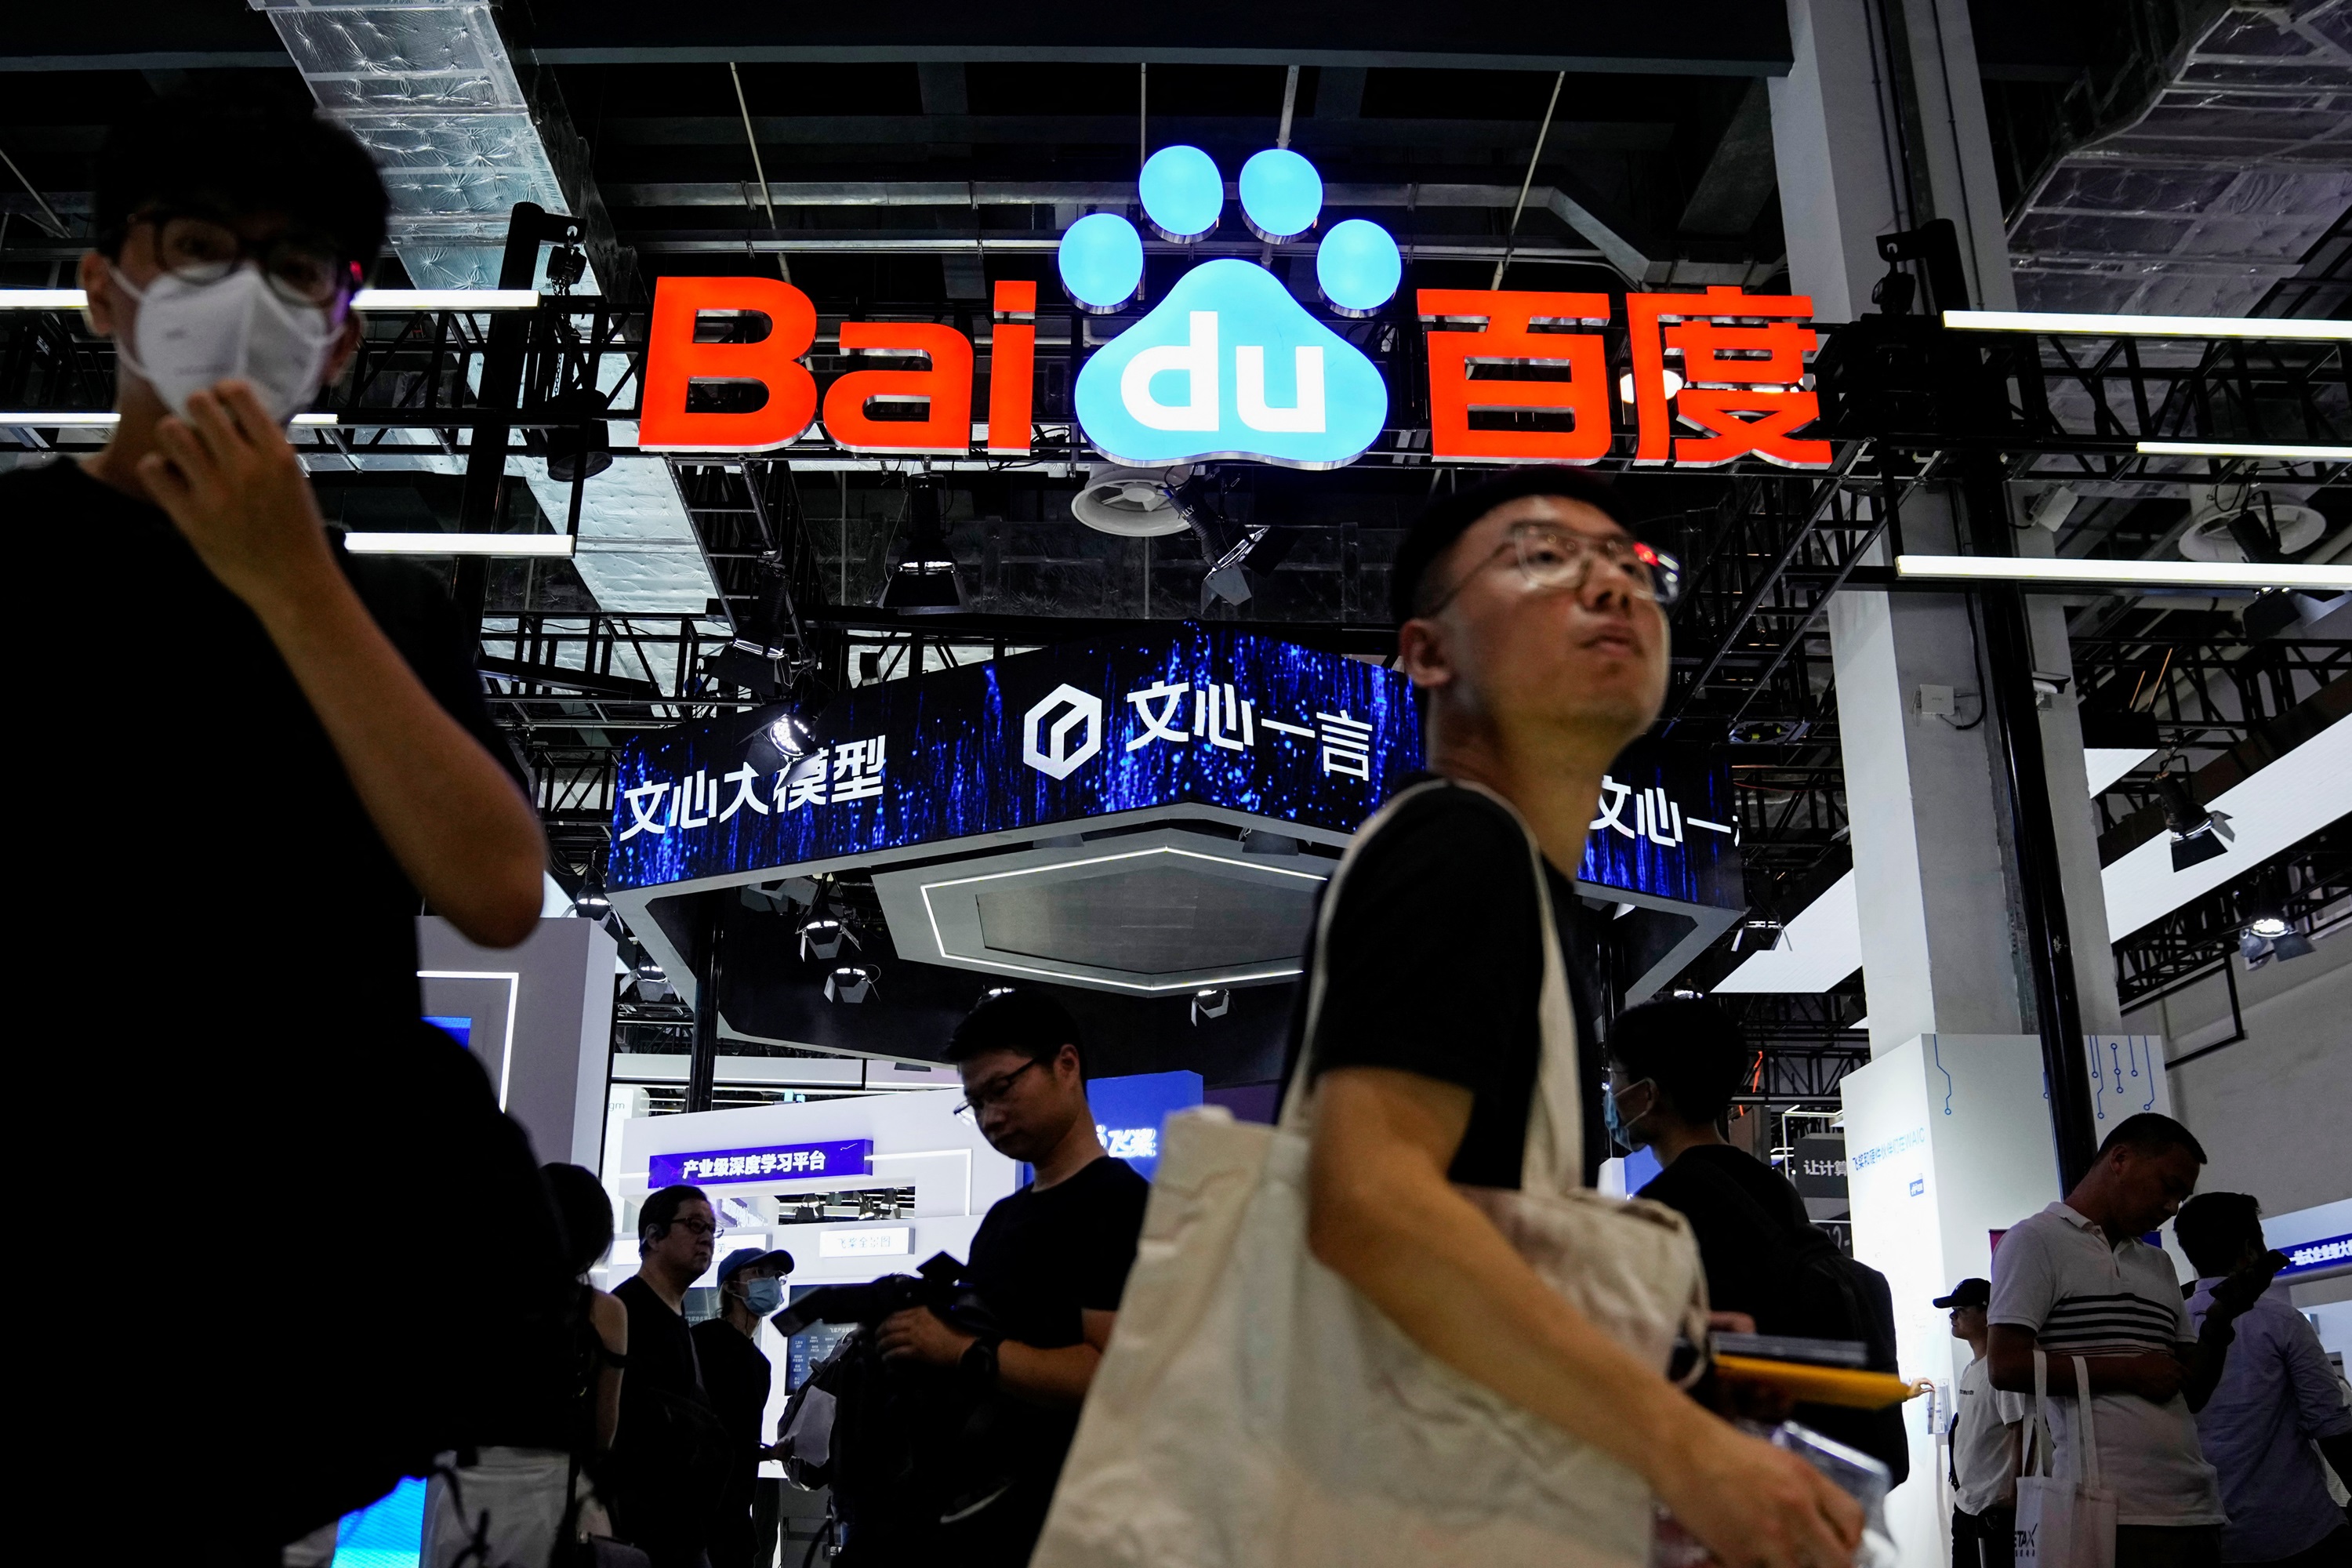 Baidu encarga chips de inteligencia artificial a Huawei en lugar de a Nvidia